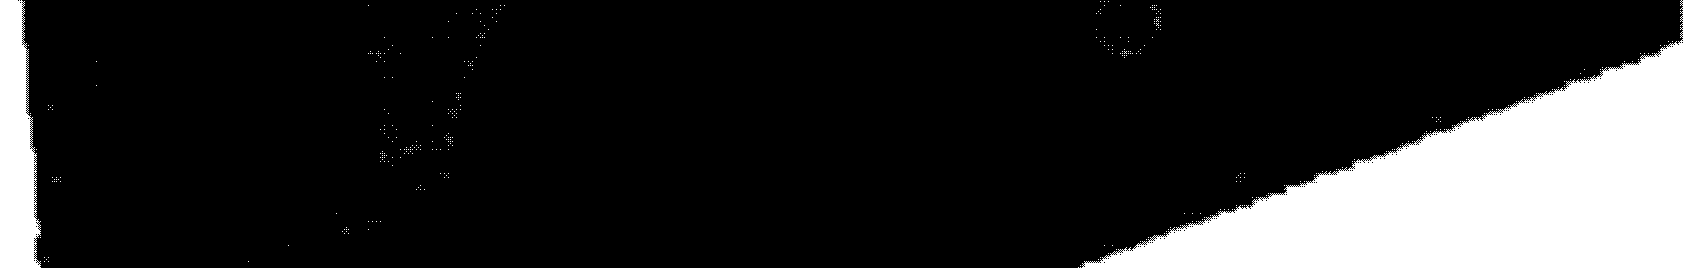 Βύσματα στερέωσης θερμομονωτικών πλακών 3. Κόλλα Kelyfos Thermo (Isomat) 4.